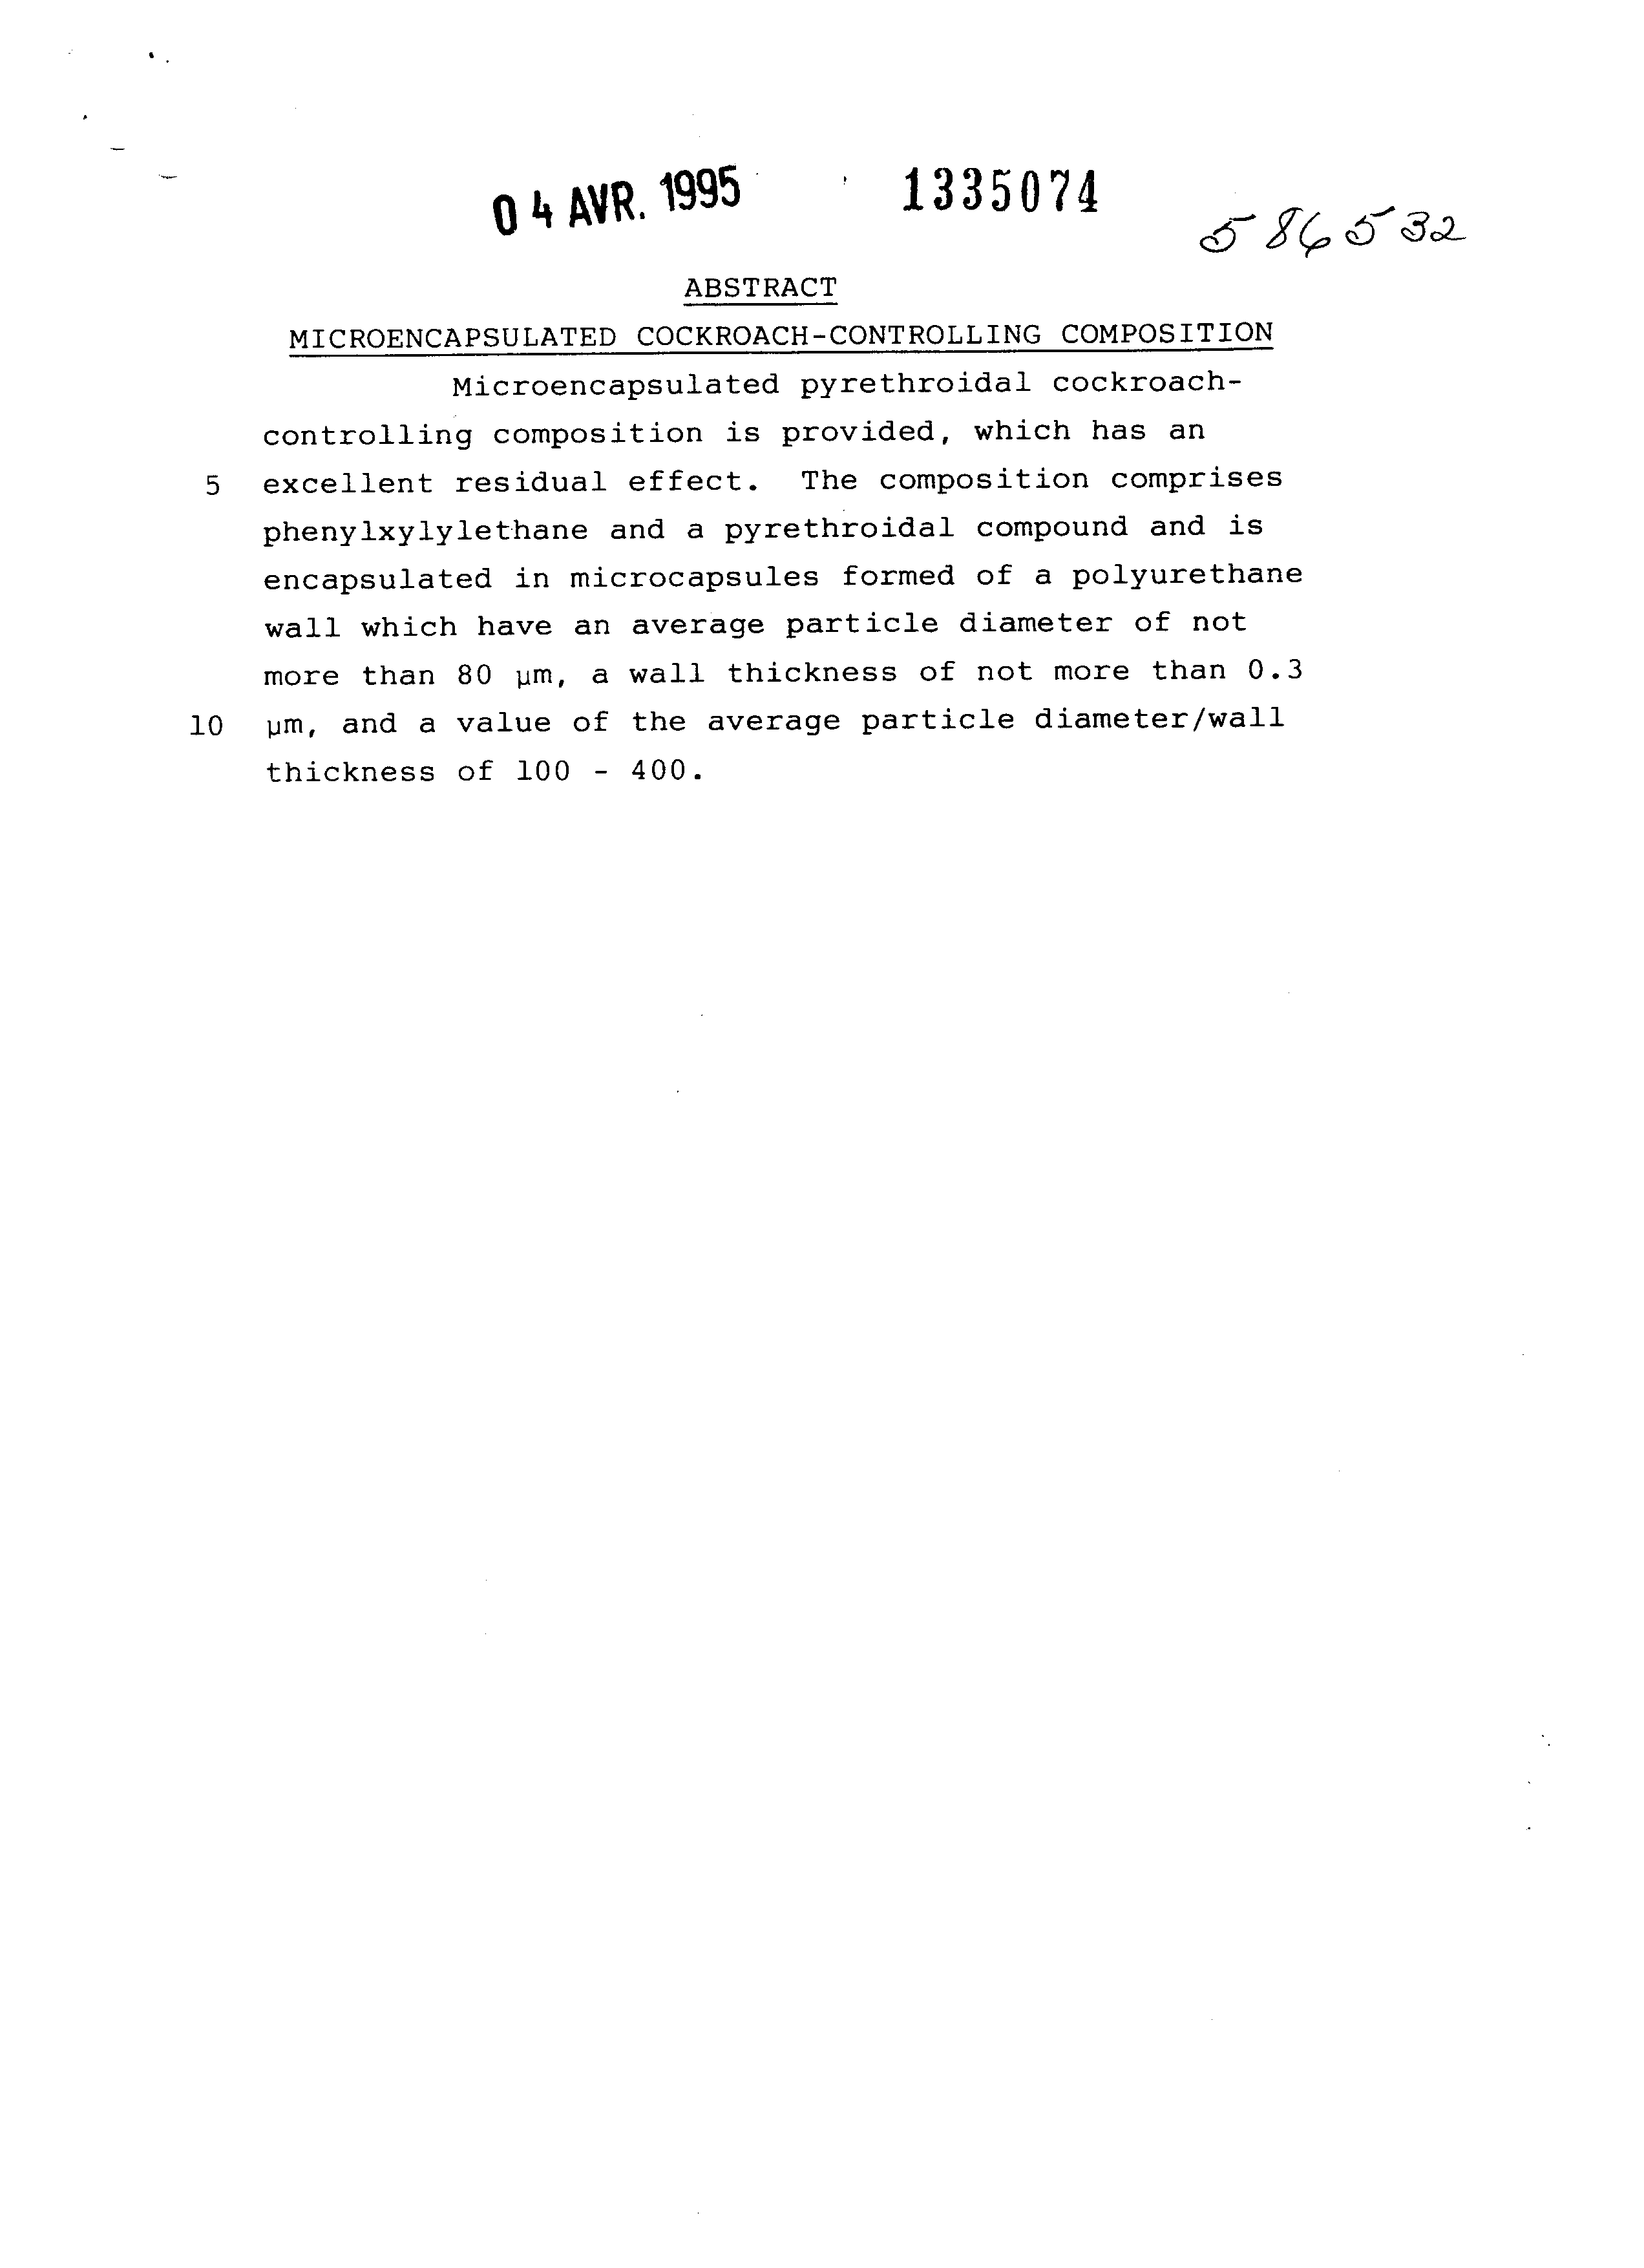 Document de brevet canadien 1335074. Abrégé 19941204. Image 1 de 1